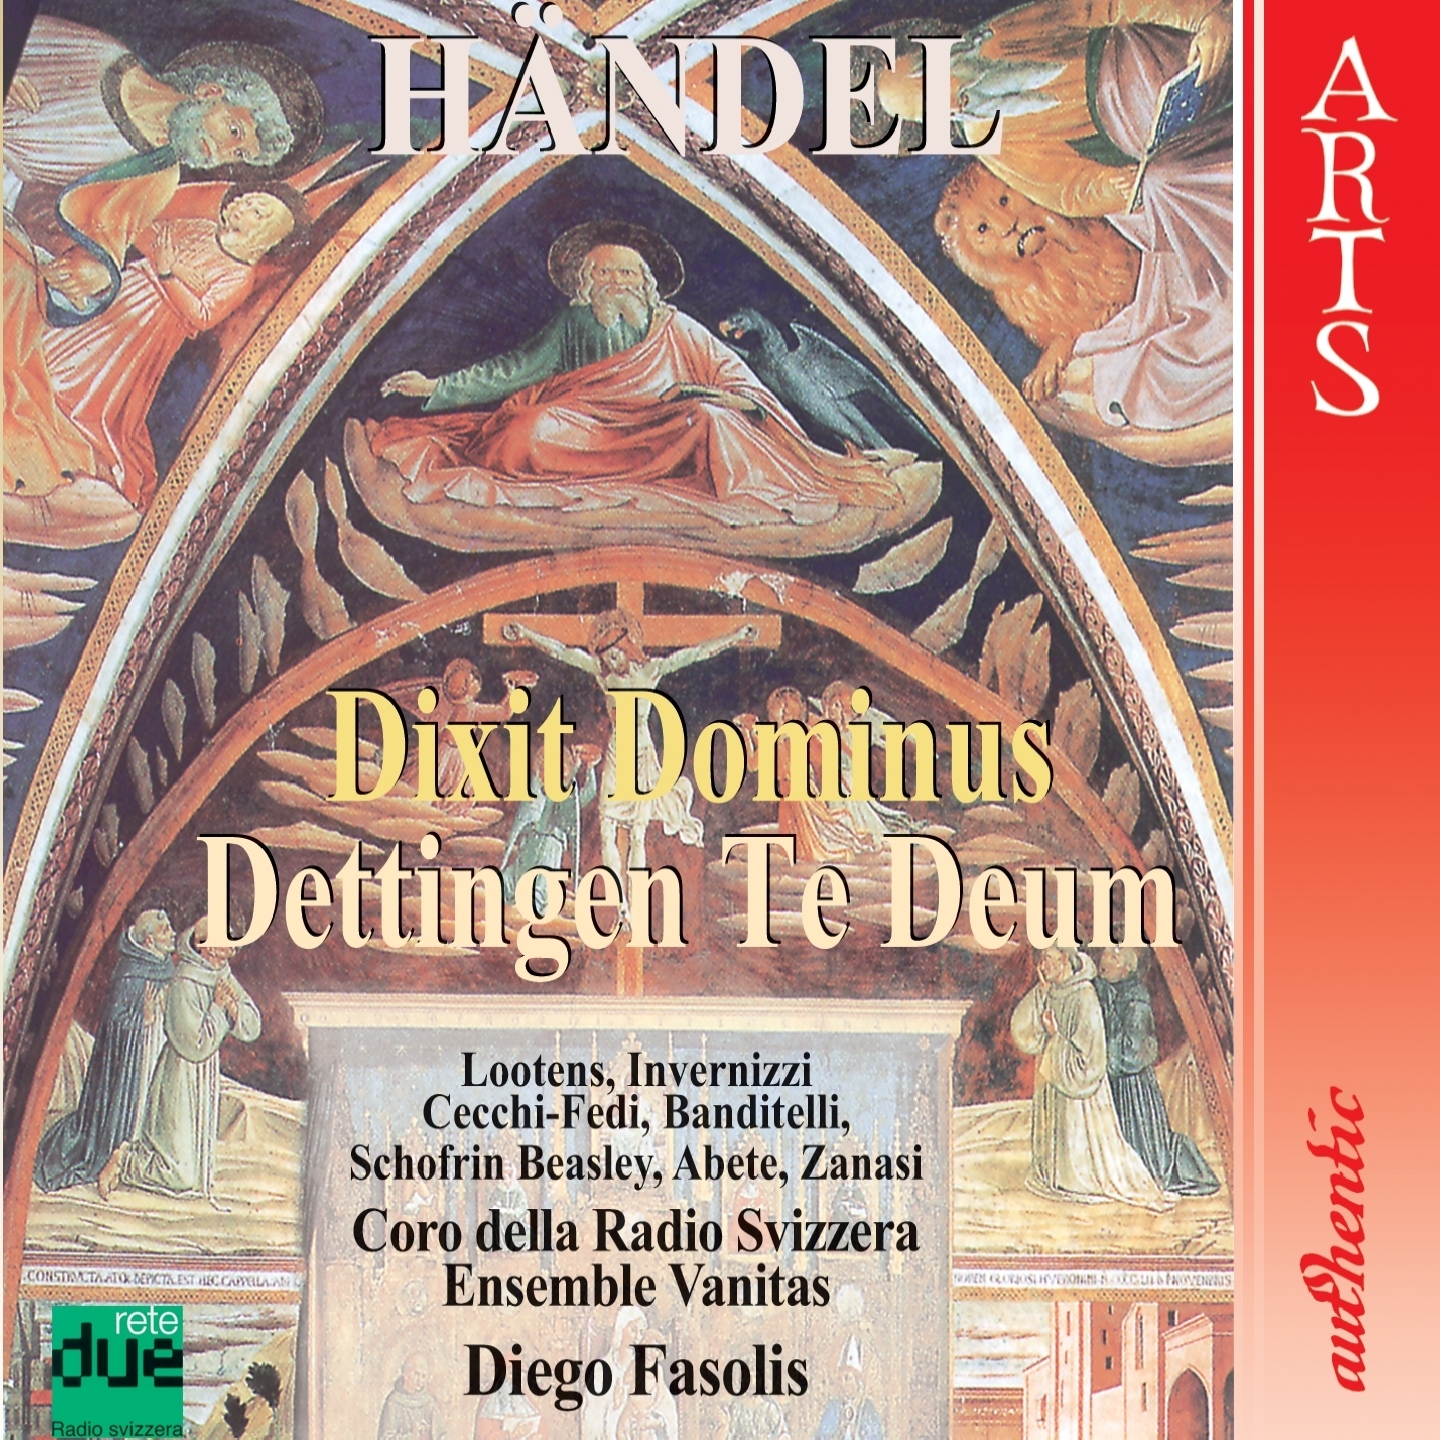 Dettingen Te Deum: Te Deum laudamus, No. 3 To Thee all angels cry aloud